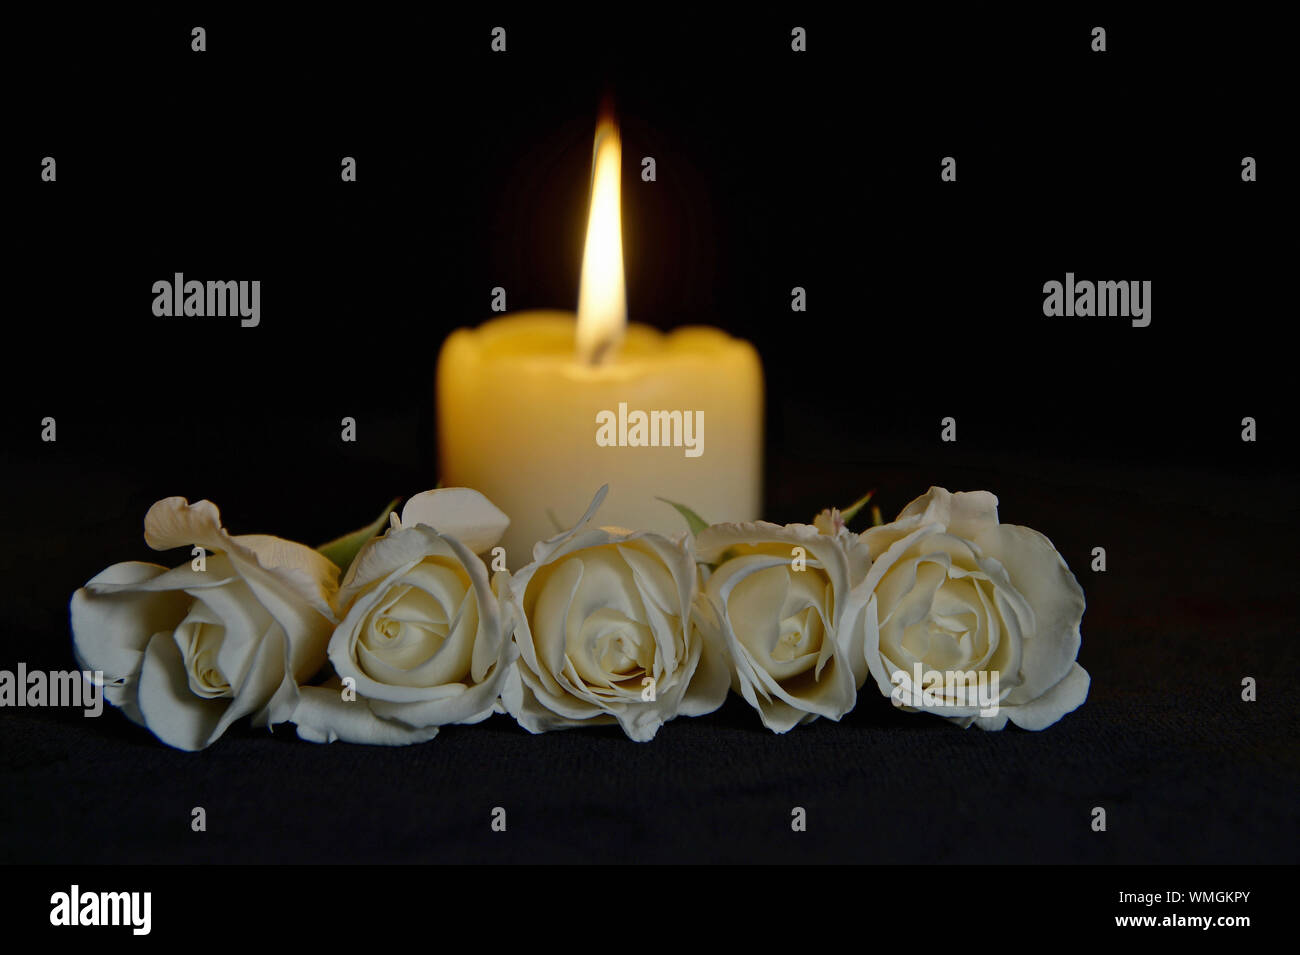 Schöne weisse Rosen mit einer brennenden Kerze auf dem dunklen Hintergrund.  Beerdigung Blumen und Kerzen auf dem Tisch auf schwarzem Hintergrund mit  kopieren Stockfotografie - Alamy